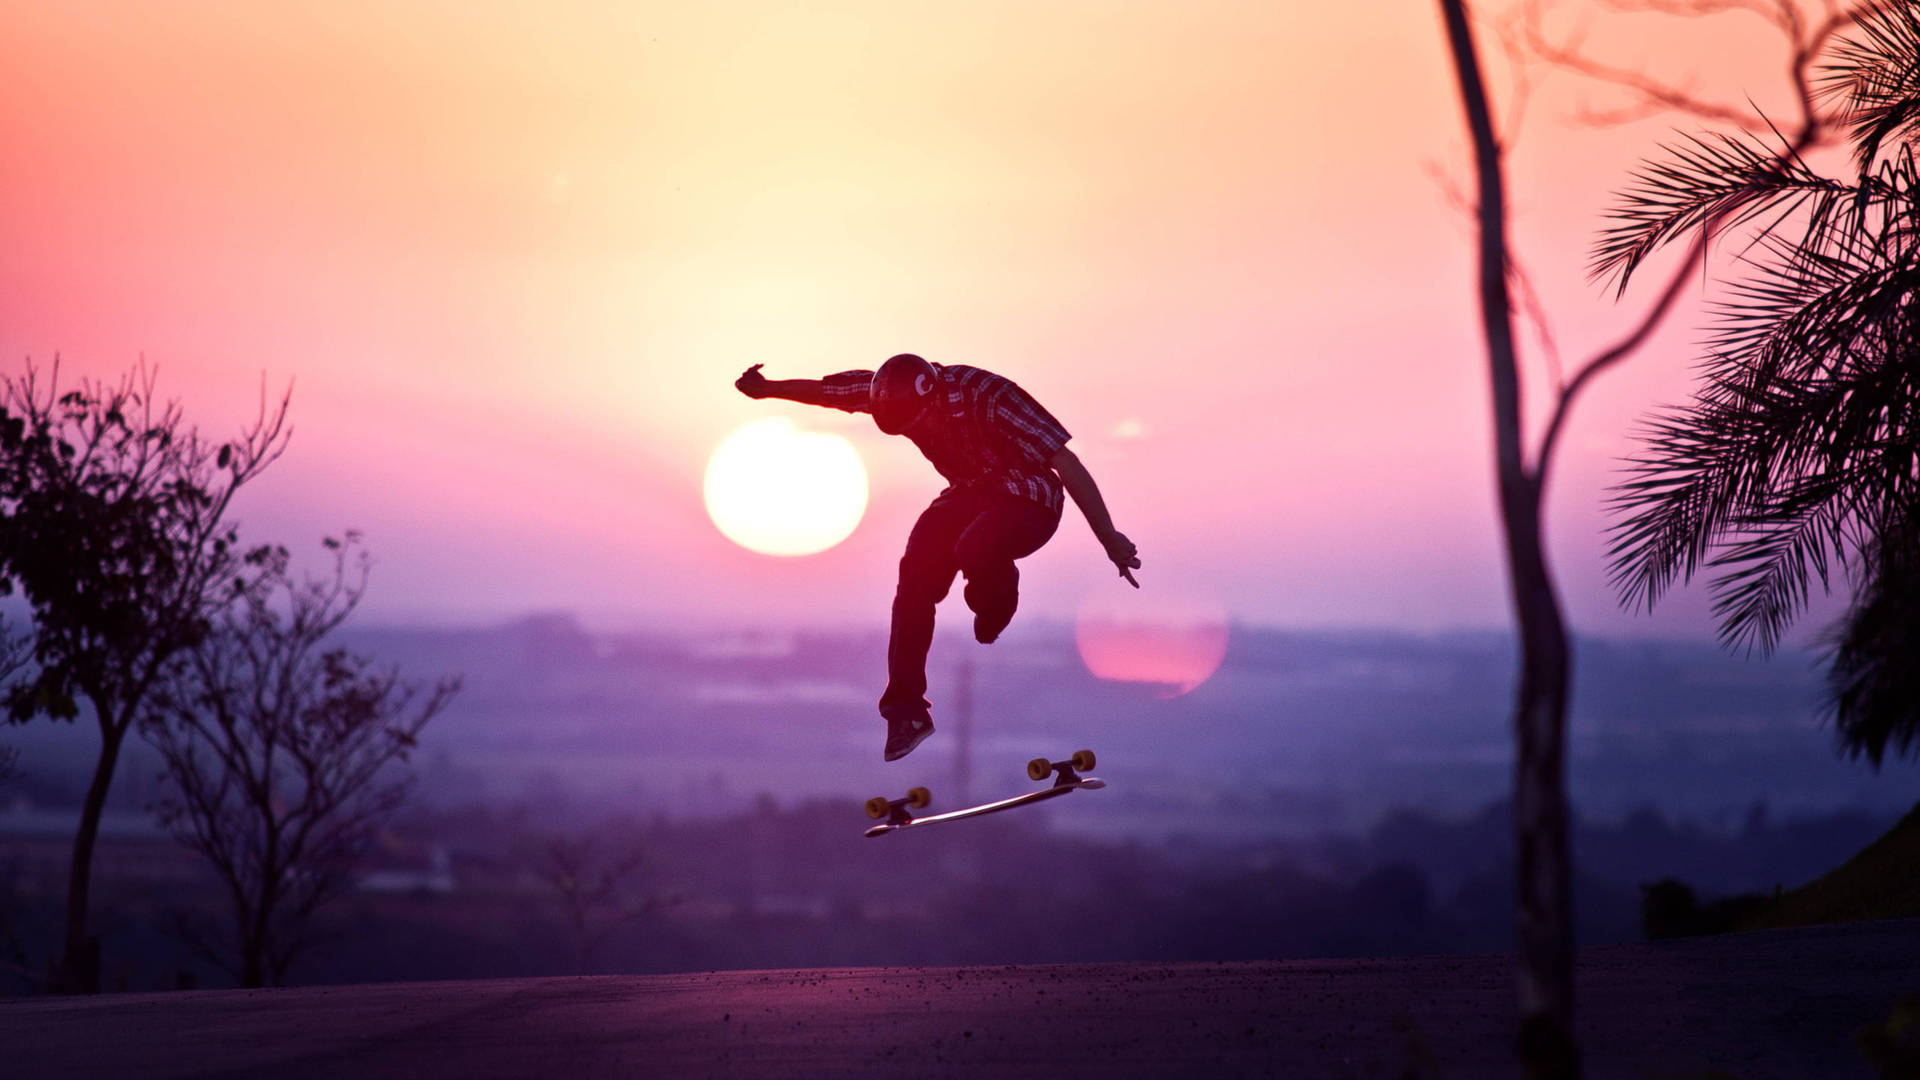 Extreme Sports Skateboarding Sunset